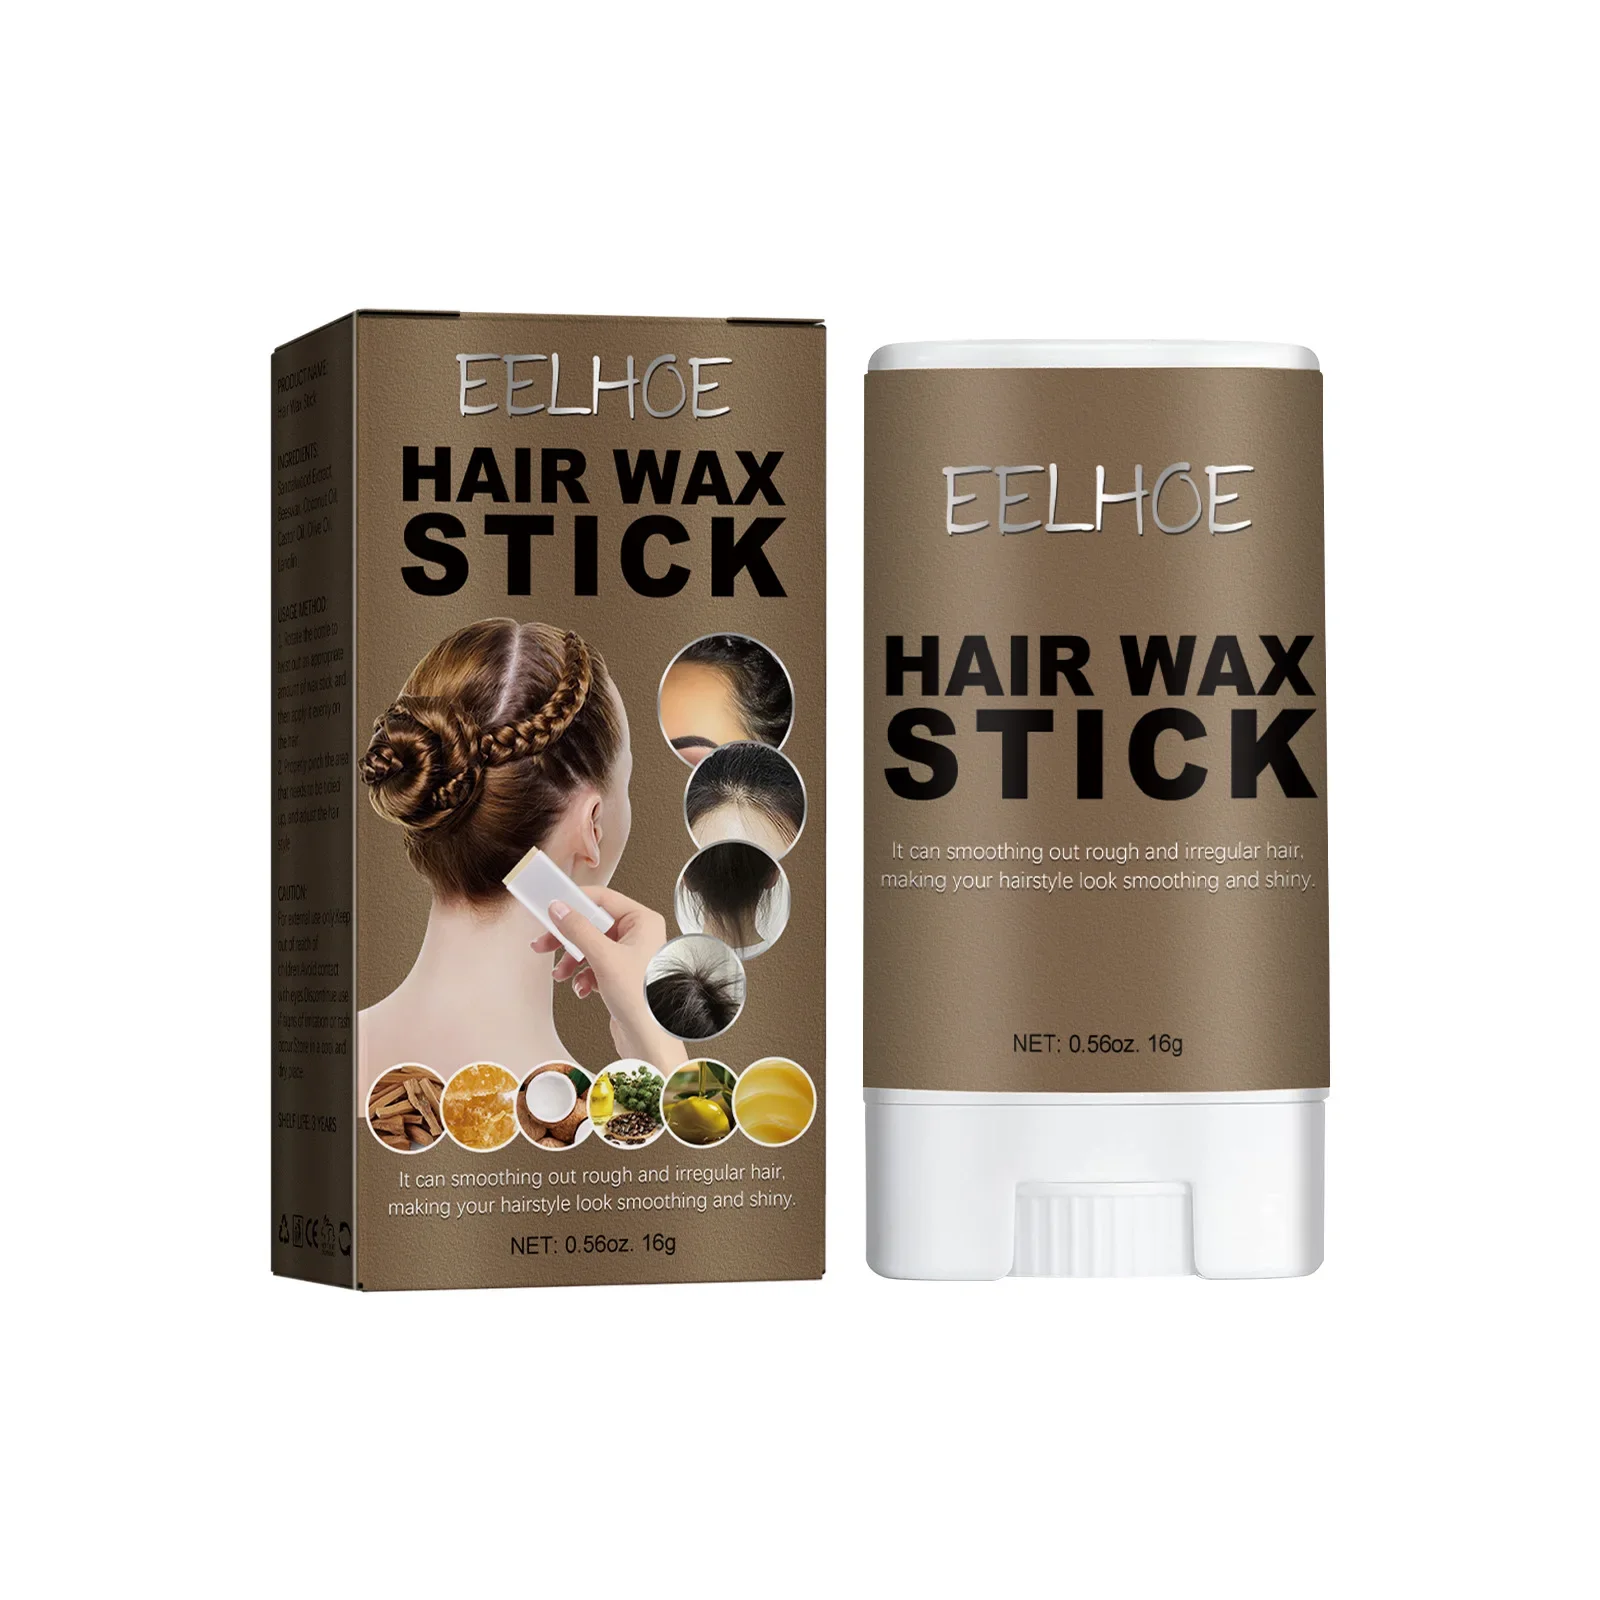 

Новый артефакт для сломанных волос Sdotter EELHOE, Восковая Палочка для волос, гелевый крем, профессиональный Стайлинг волос, спутанные пушистые фиксированные волосы для мужчин и женщин